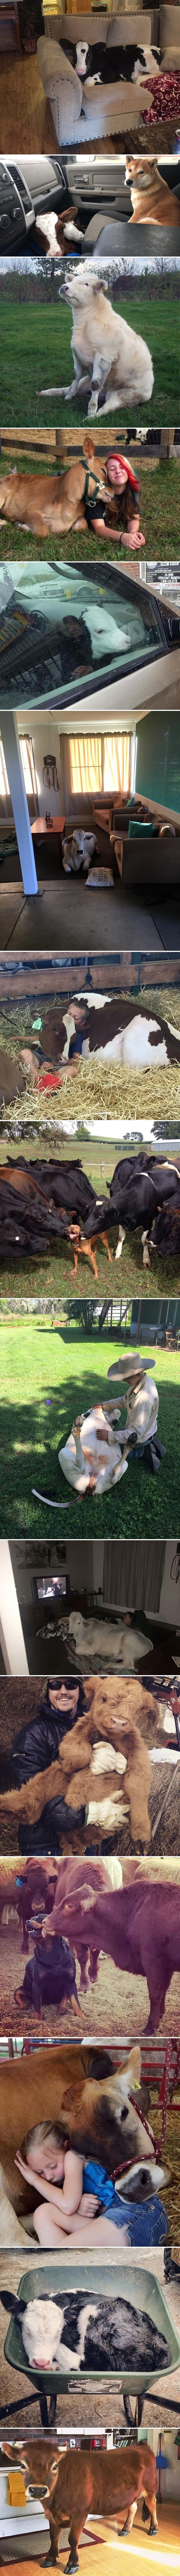 15 neobičnih slika kravica koje su se počele ponašati kao da su nečiji kućni ljubimci